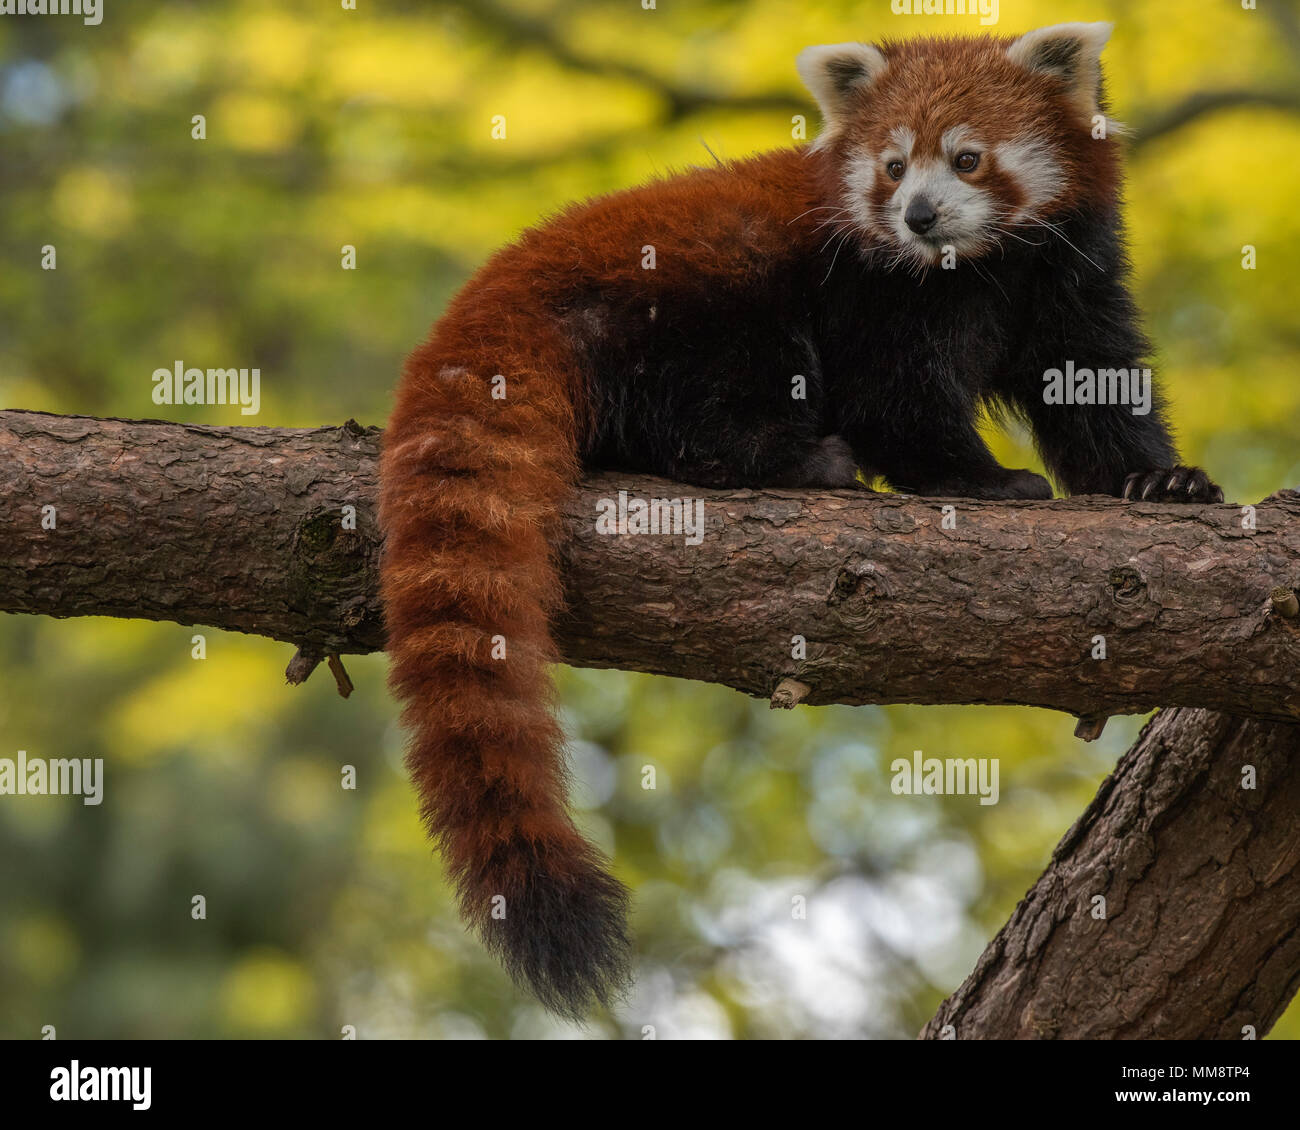 El panda rojo o también conocido como el rojo Cat-Bear. Es ligeramente más grande que un gato doméstico y se encuentra principalmente en la región oriental del Himalaya Foto de stock